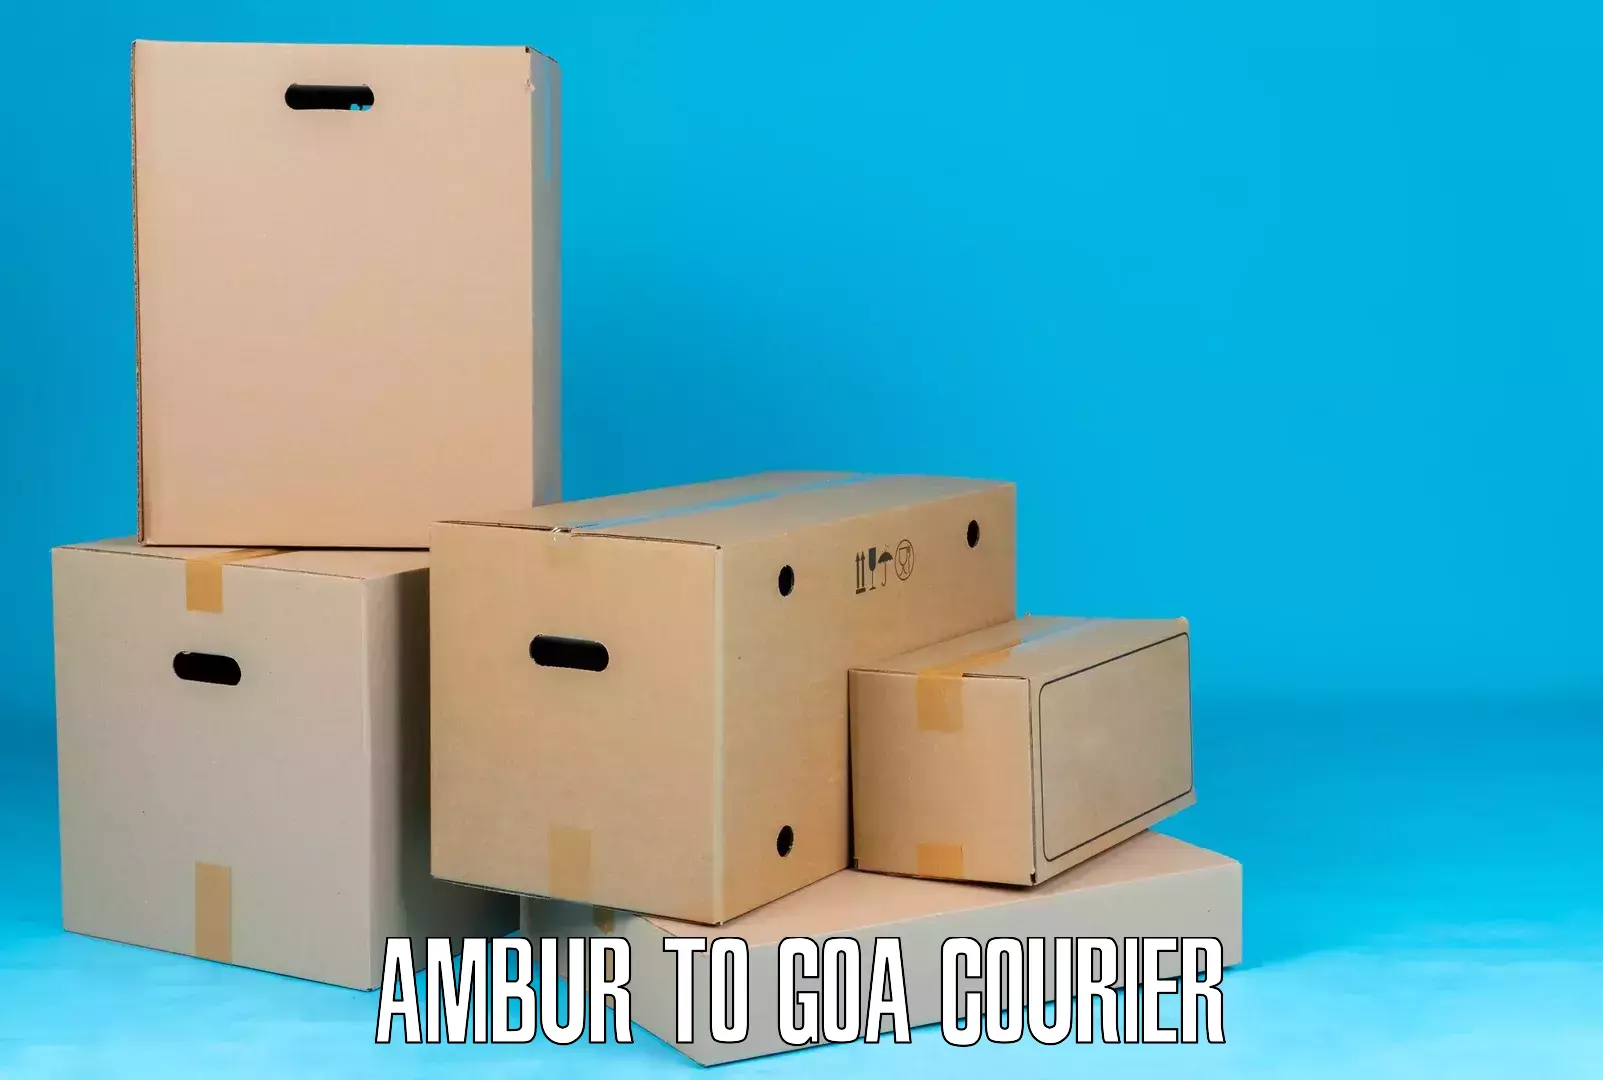 Courier service comparison Ambur to NIT Goa